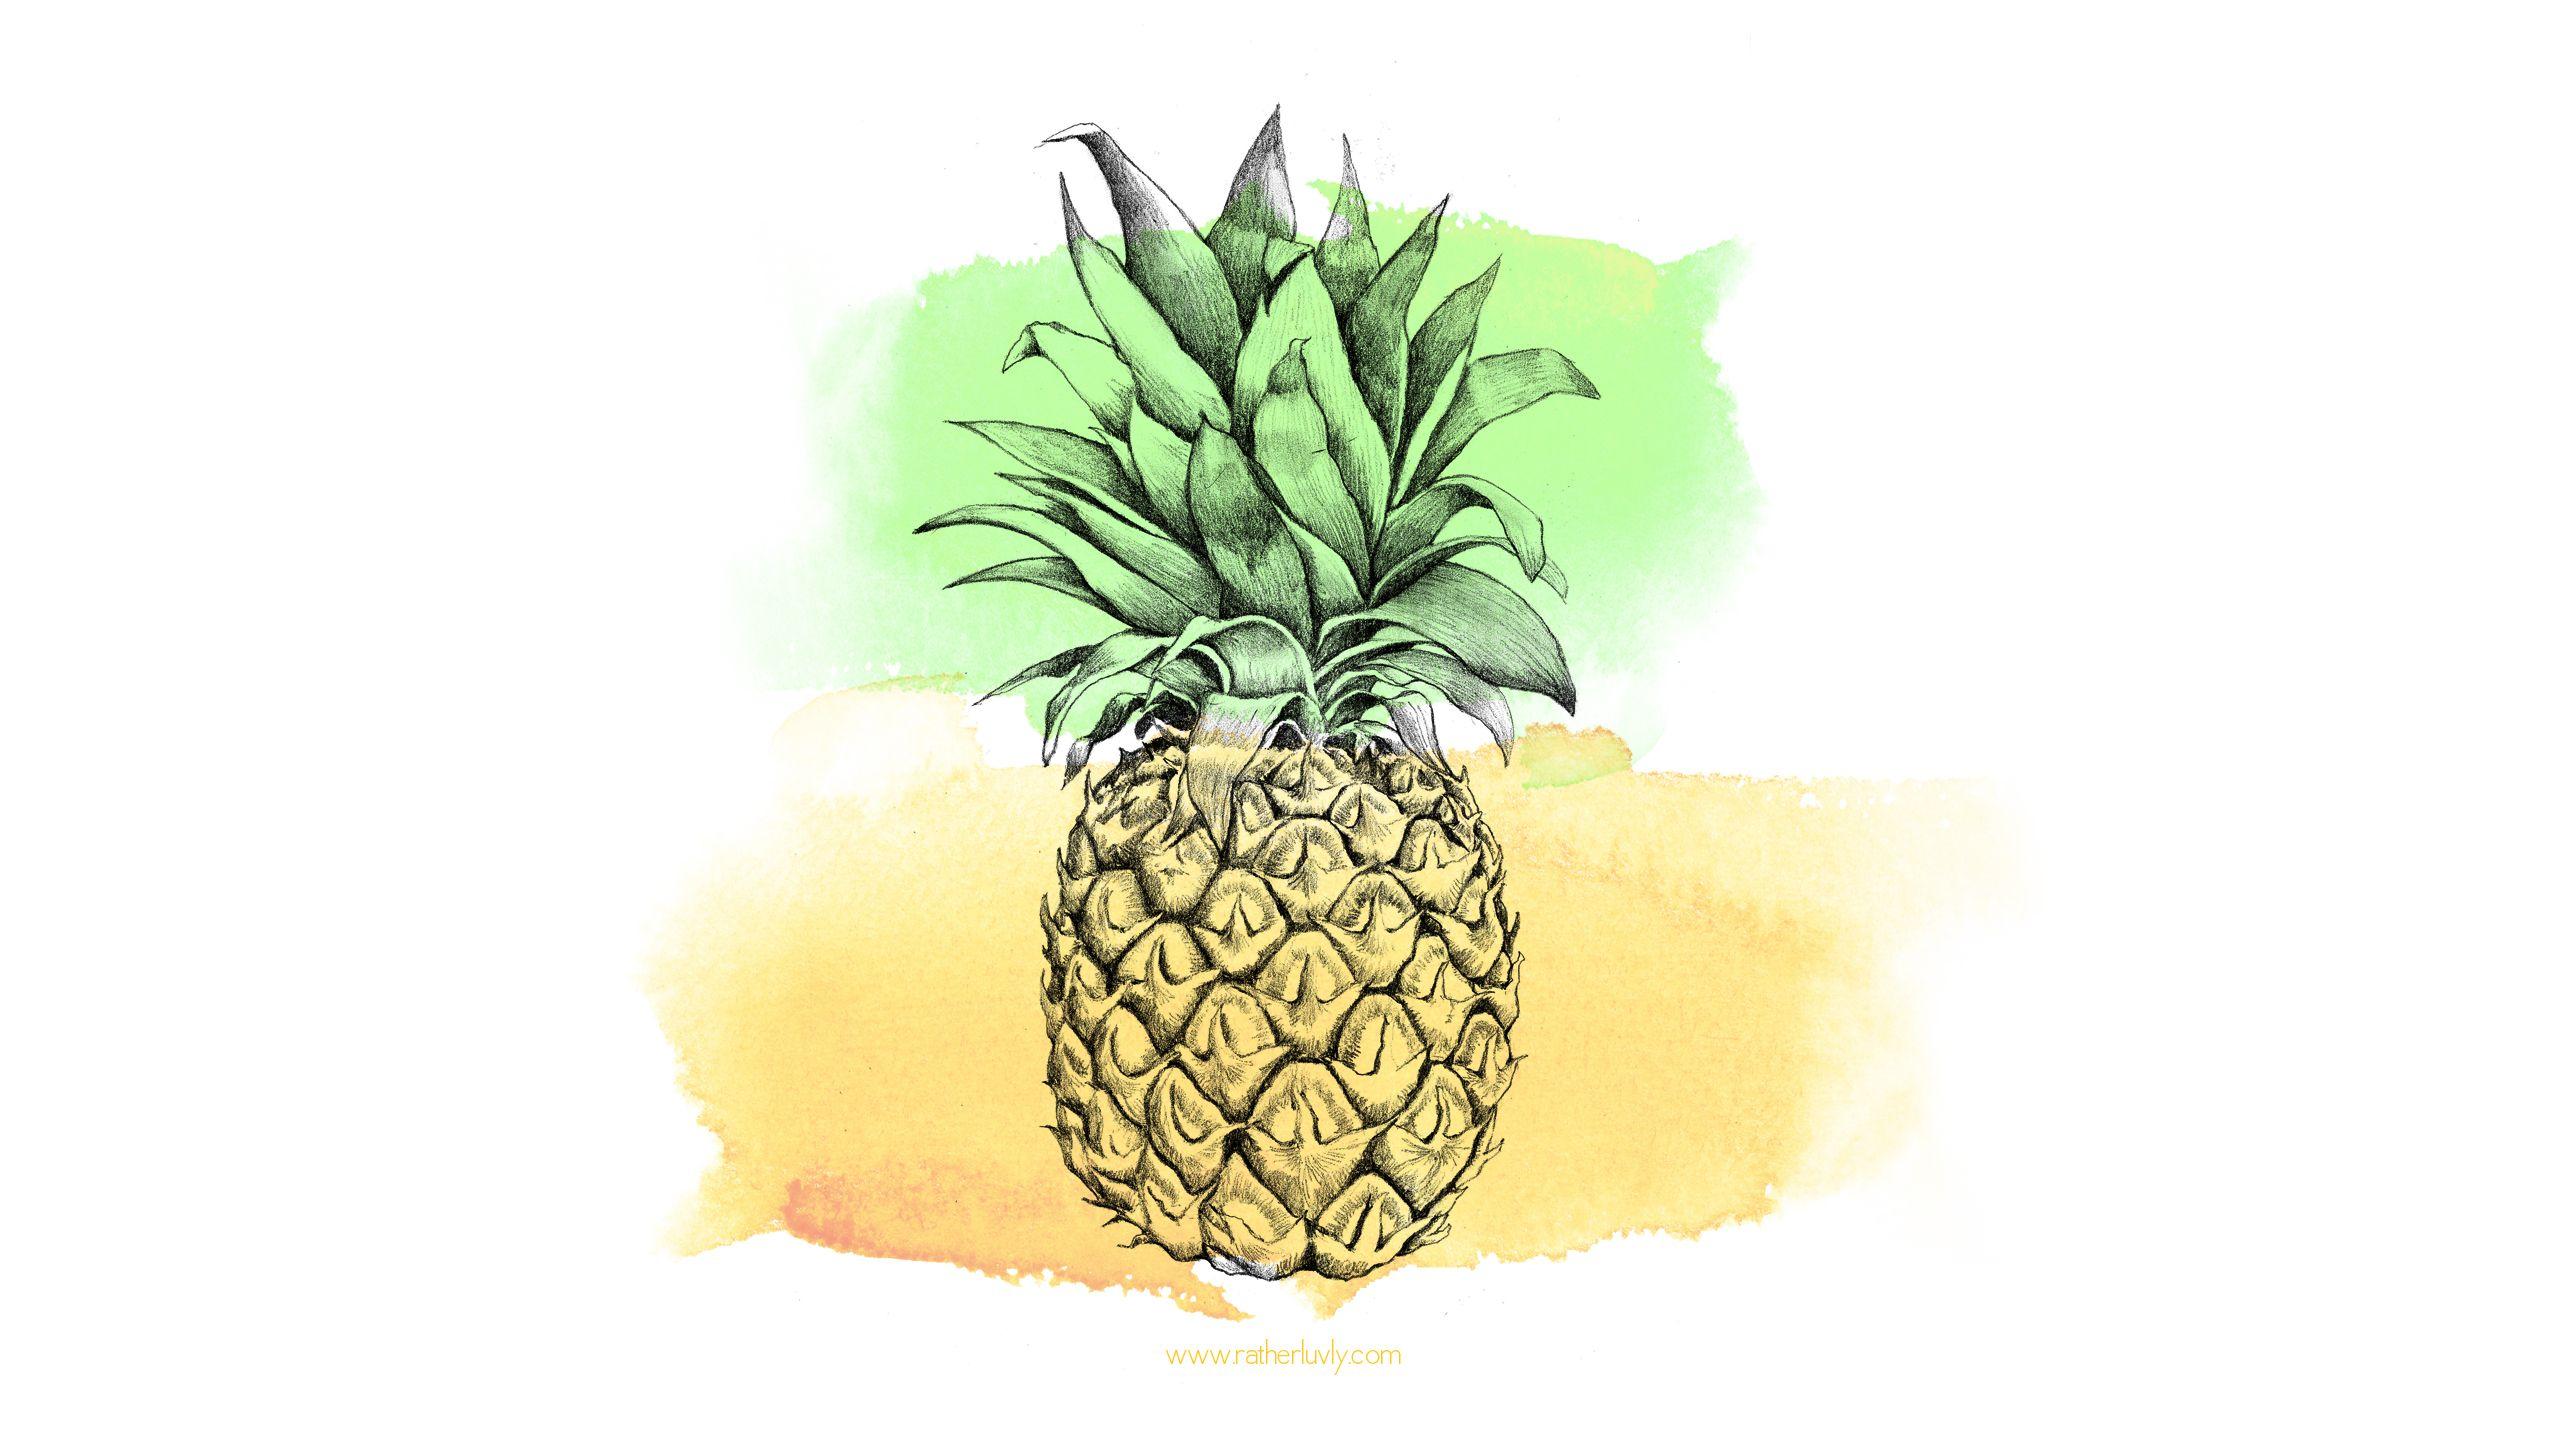 Free Download Bonus #Pineapple Desktop Wallpaper in 2020